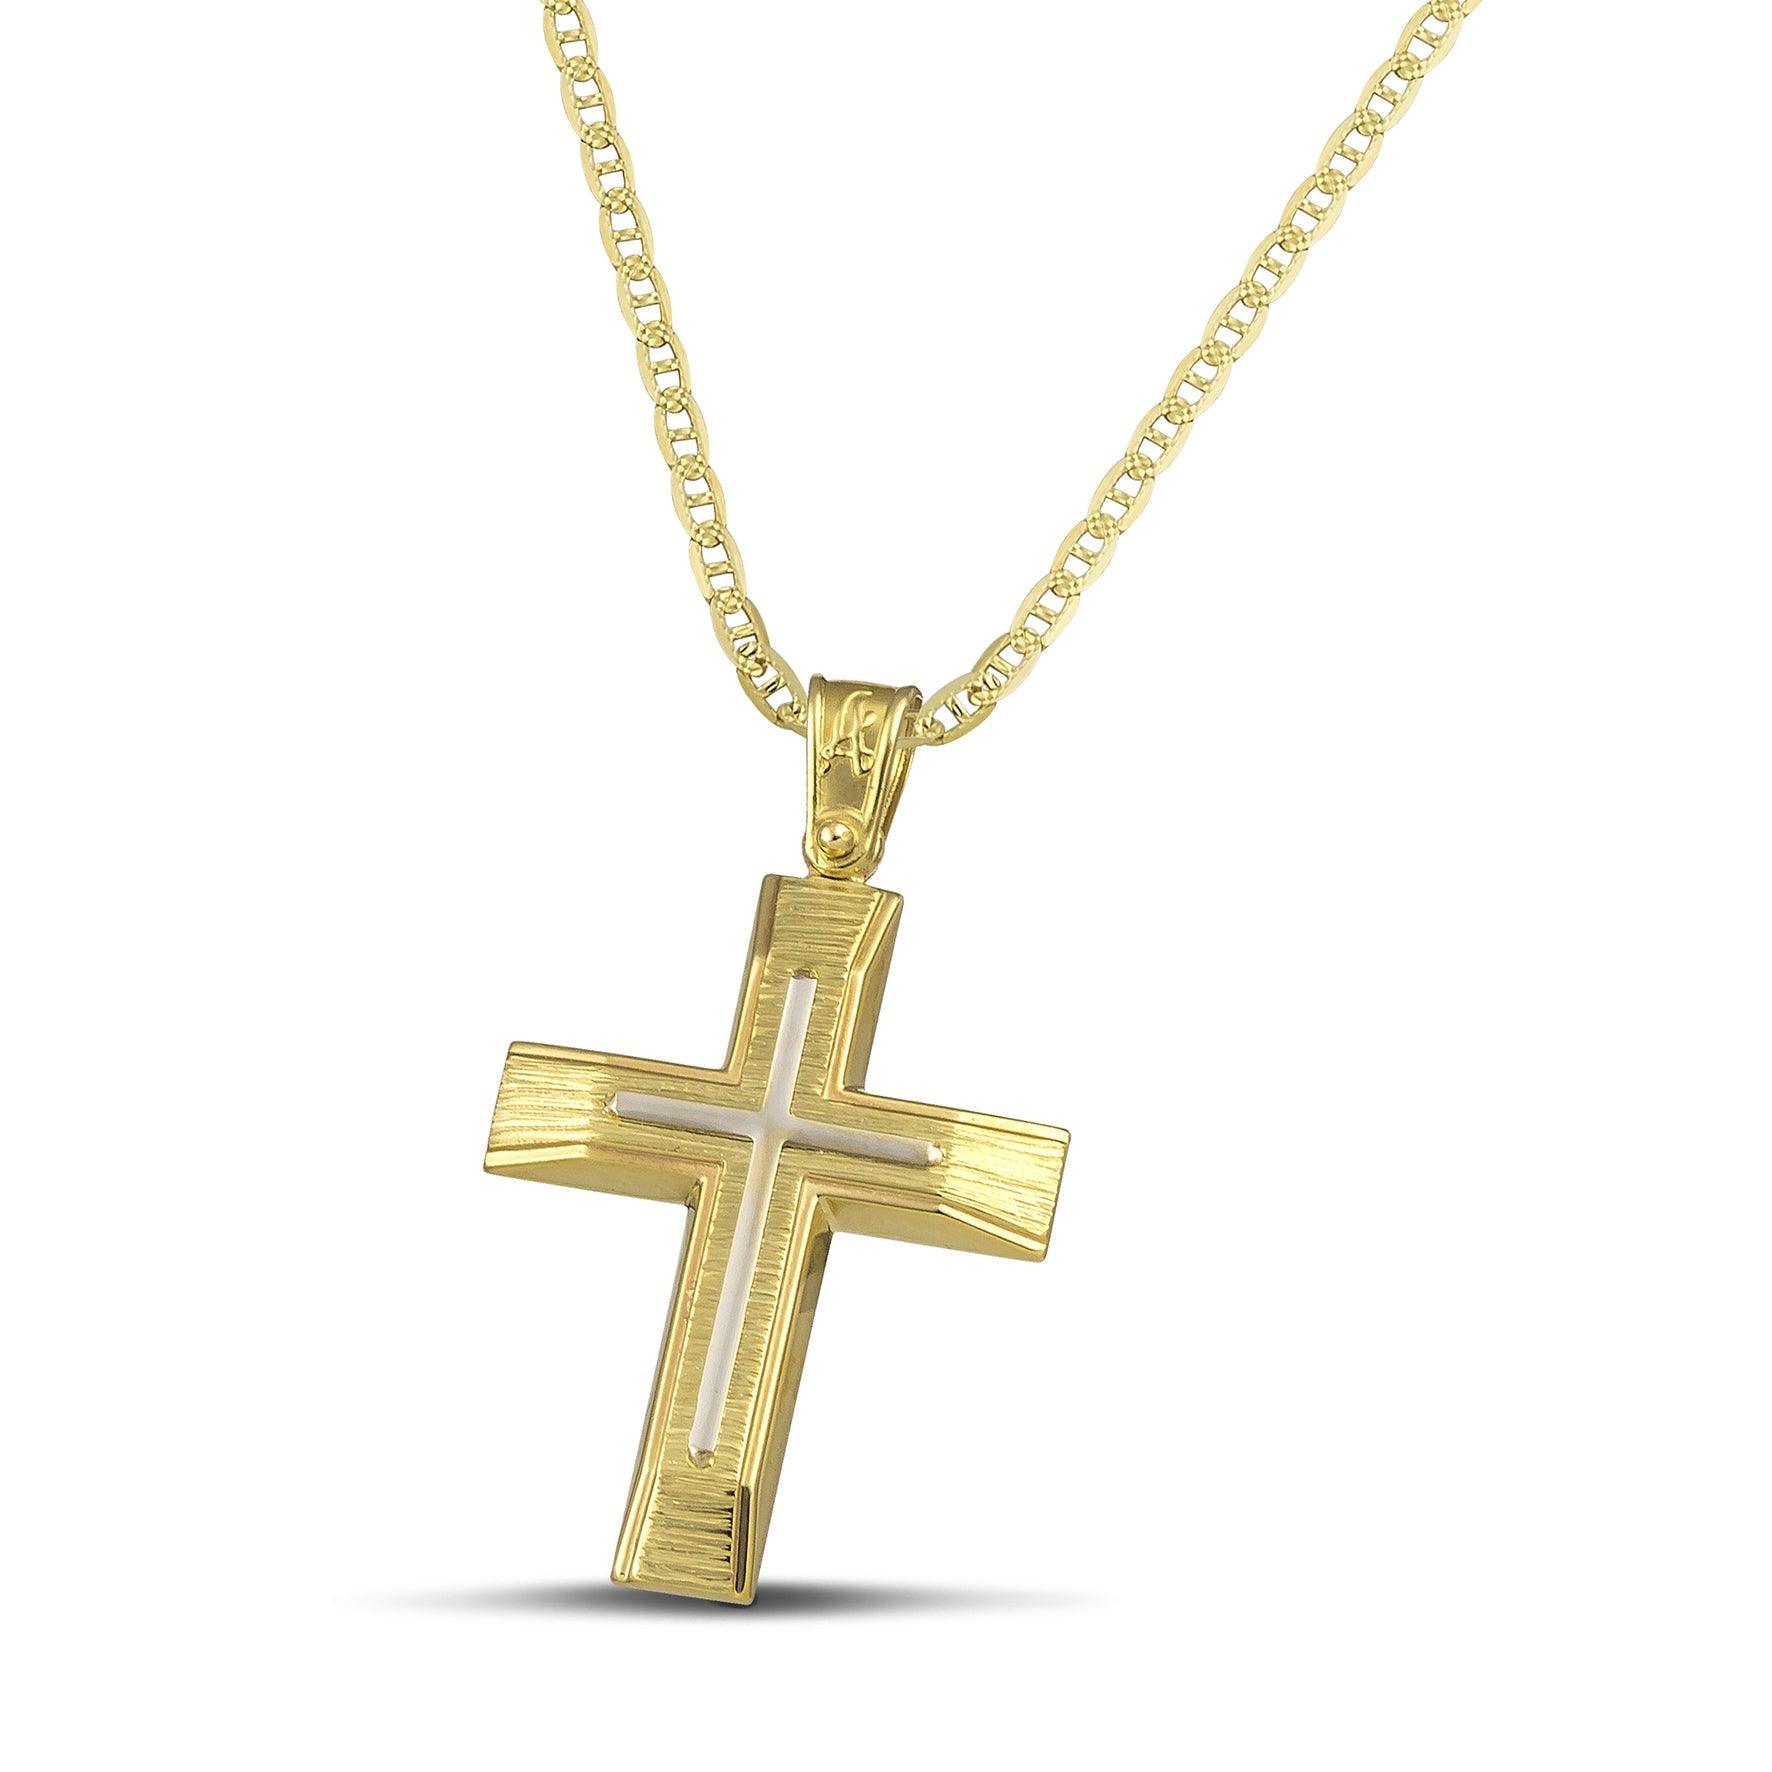 Χρυσός βαφτιστικός σταυρός Κ14 για άντρα με λευκόχρυσο σαγρέ, σε «θ» αλυσίδα.